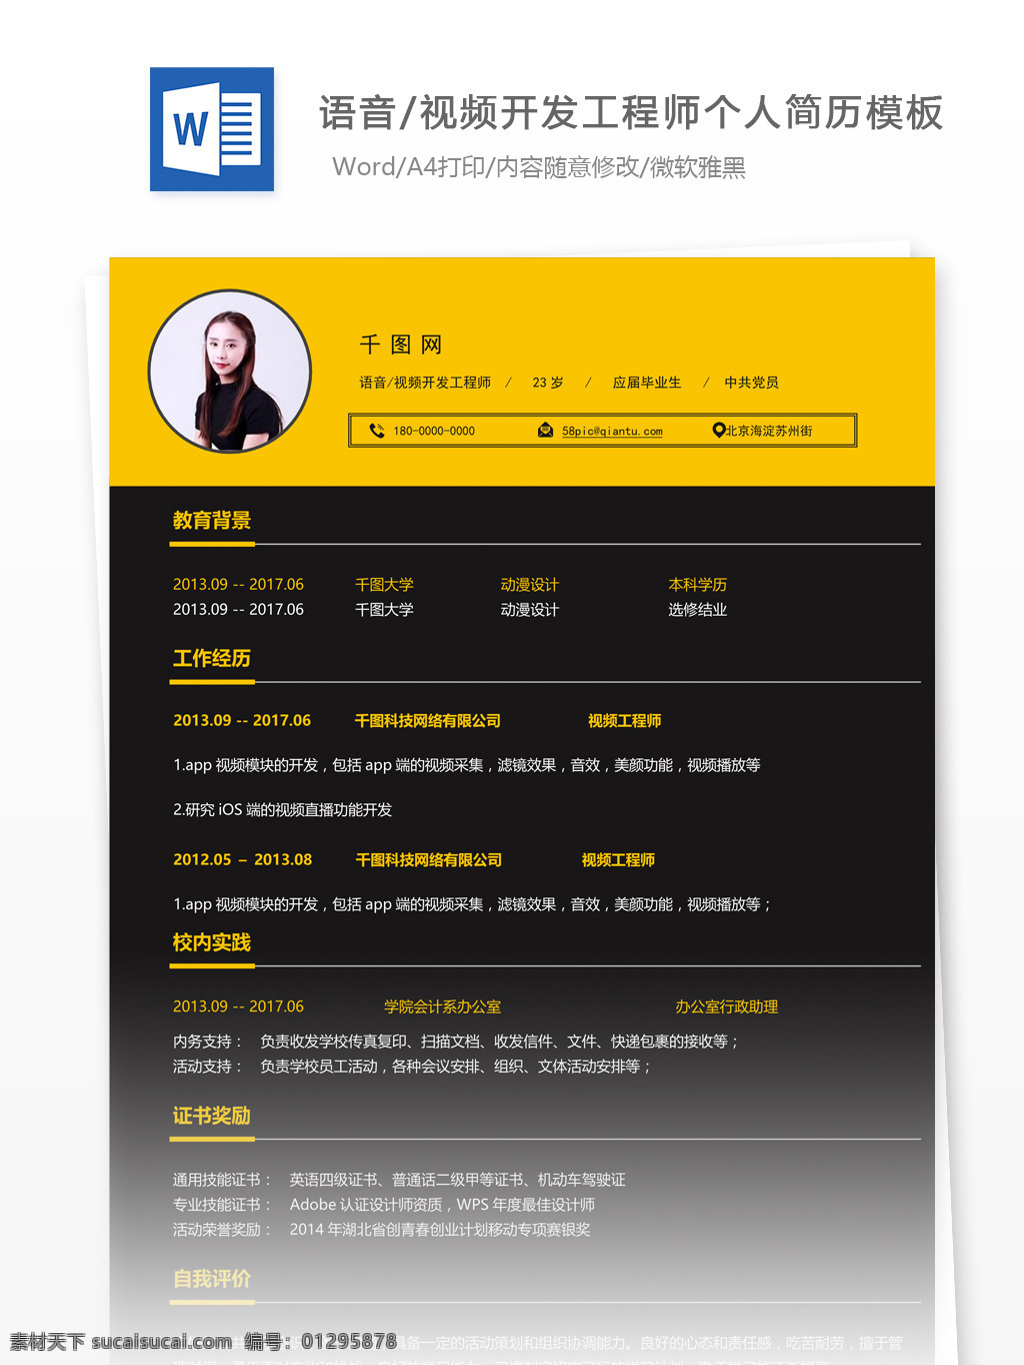 黃 宗 穎 语音 视频 开发 工程师 个人简历 模板 简历 个人简历模板 简约 应届毕业生